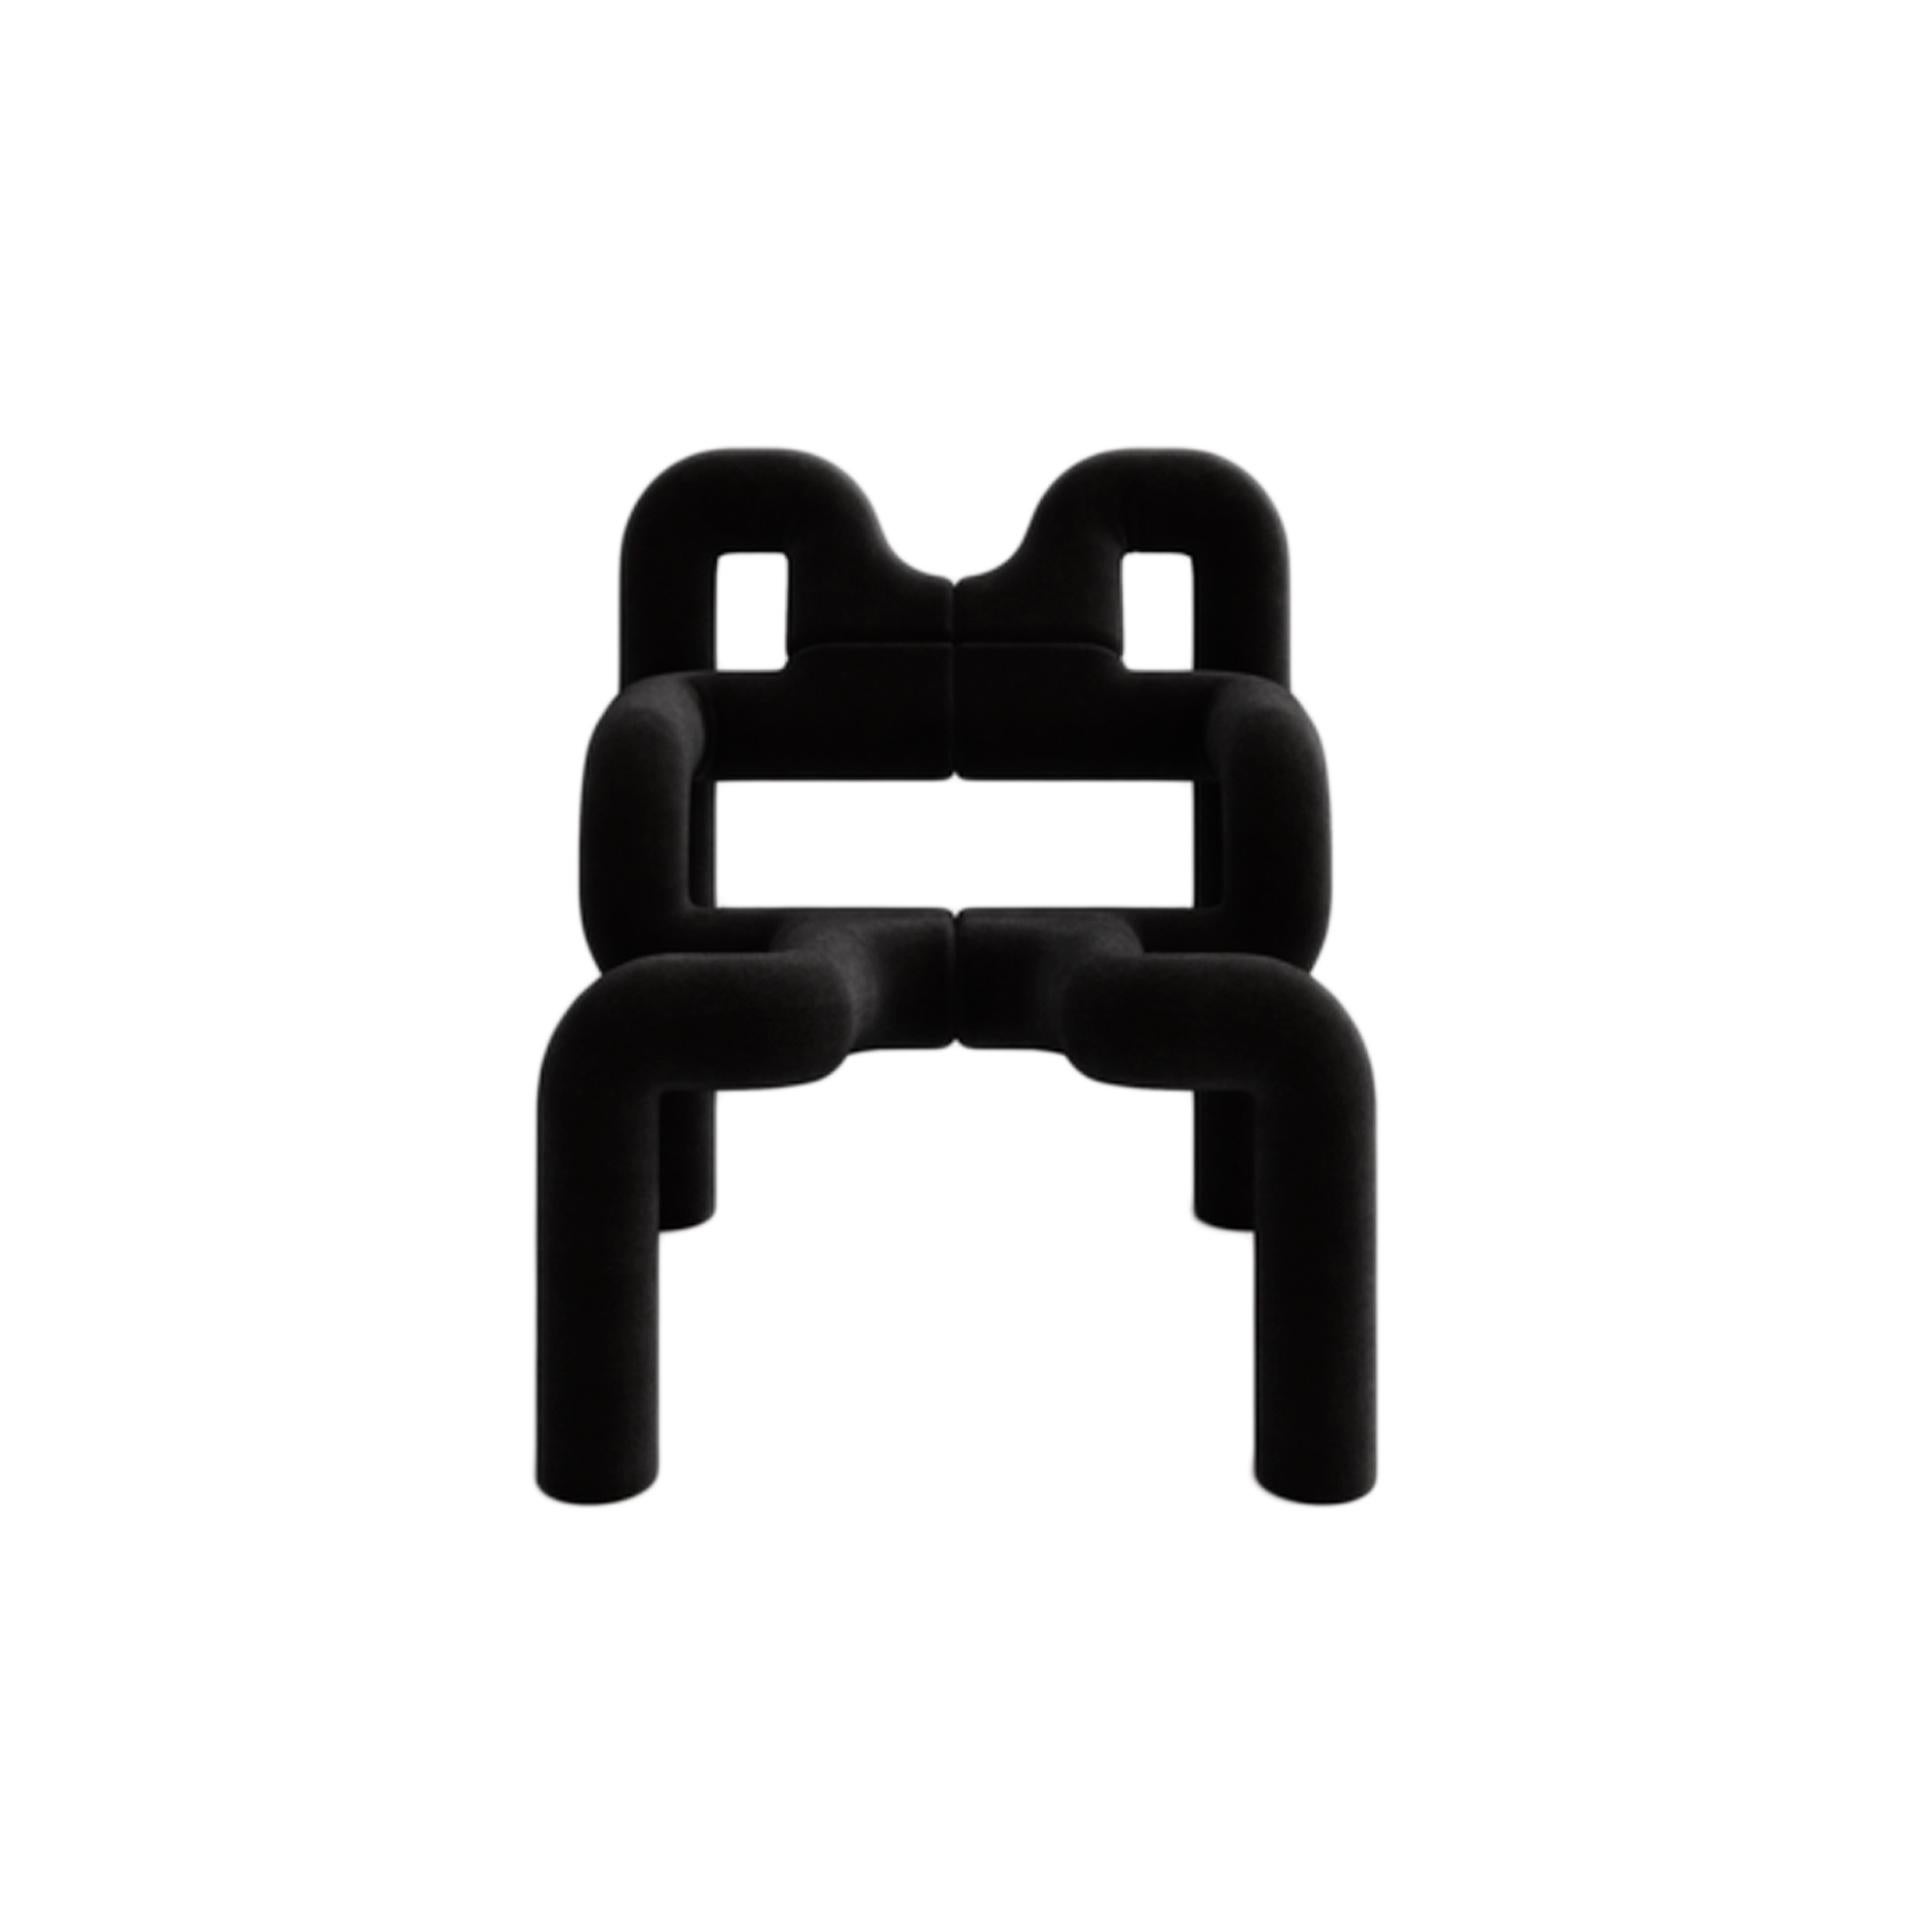 Mod Ekstrem Sessel, entworfen von Terje Ekstrom. Struktur aus Stahl, überzogen mit Wollstrickschaum und gepolstert mit schwarzem Wollstoff.

Jeder Artikel, den LA Studio anbietet, wird von unserem 10-köpfigen Team in unserer hauseigenen Werkstatt